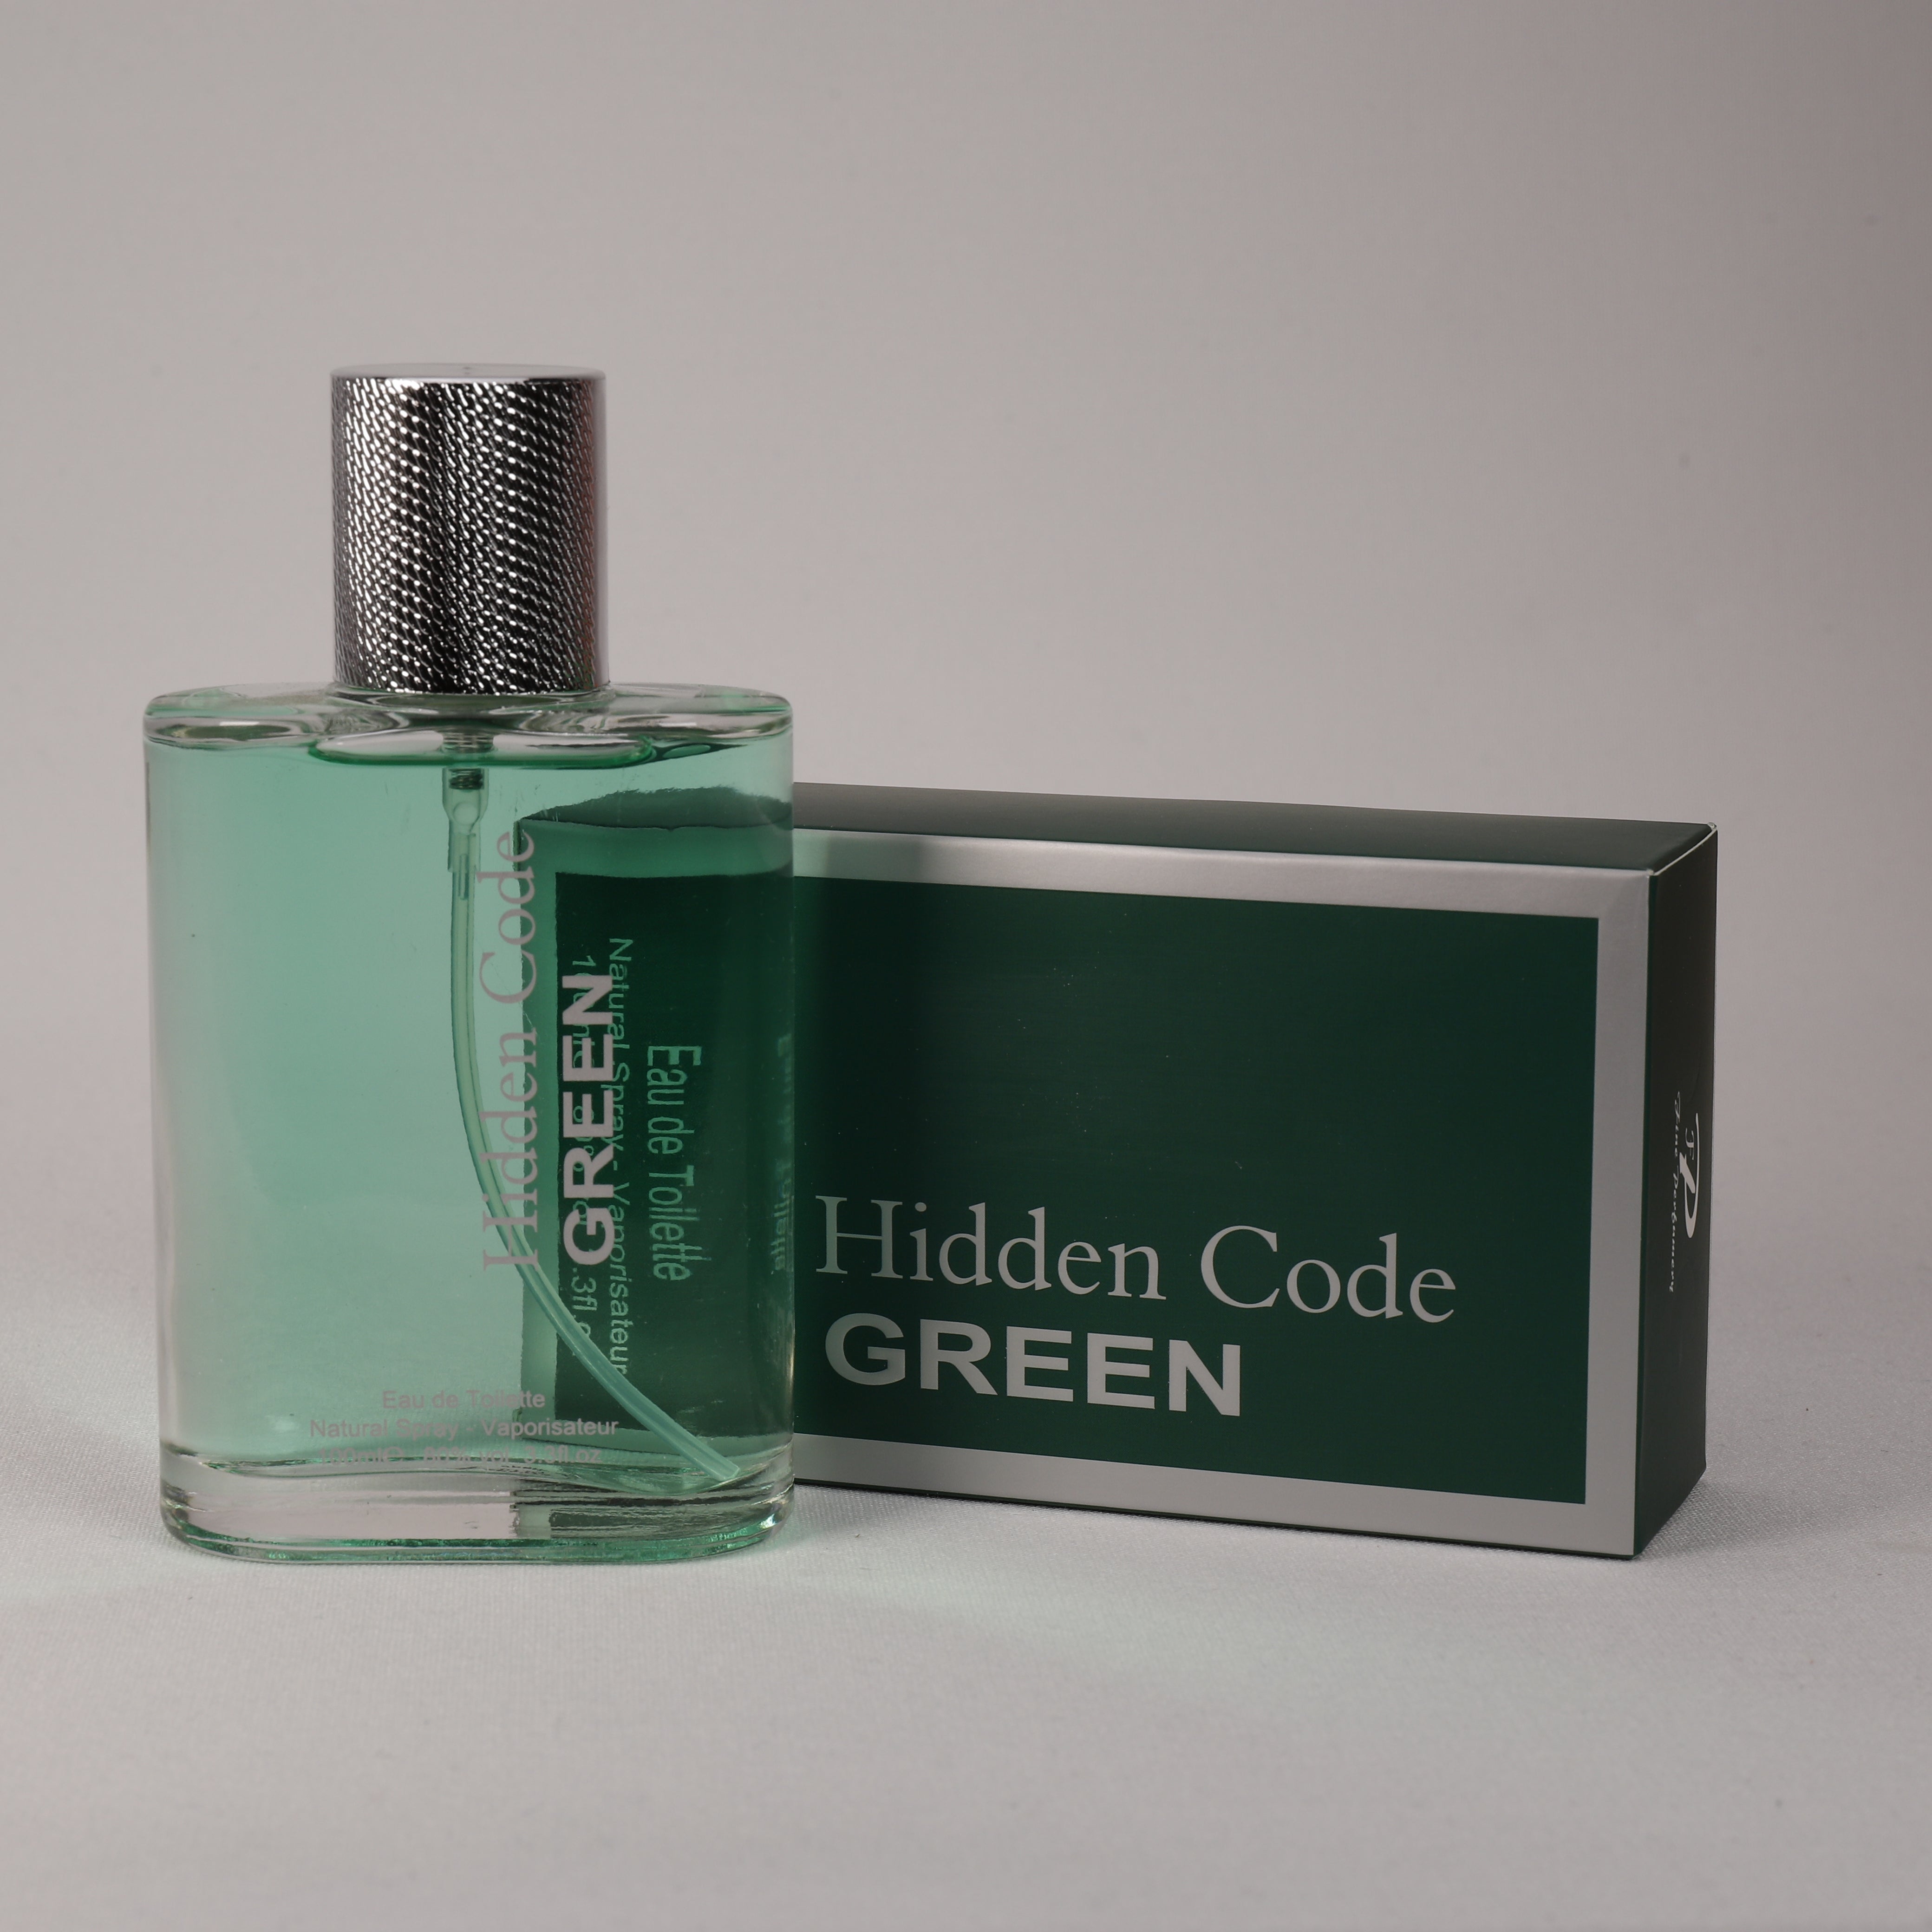 Hidden Code Green für Herren, Vaporizer mit natürlichem Spray, 100 ml, Duft, TOP Parfüm, NEU OVP